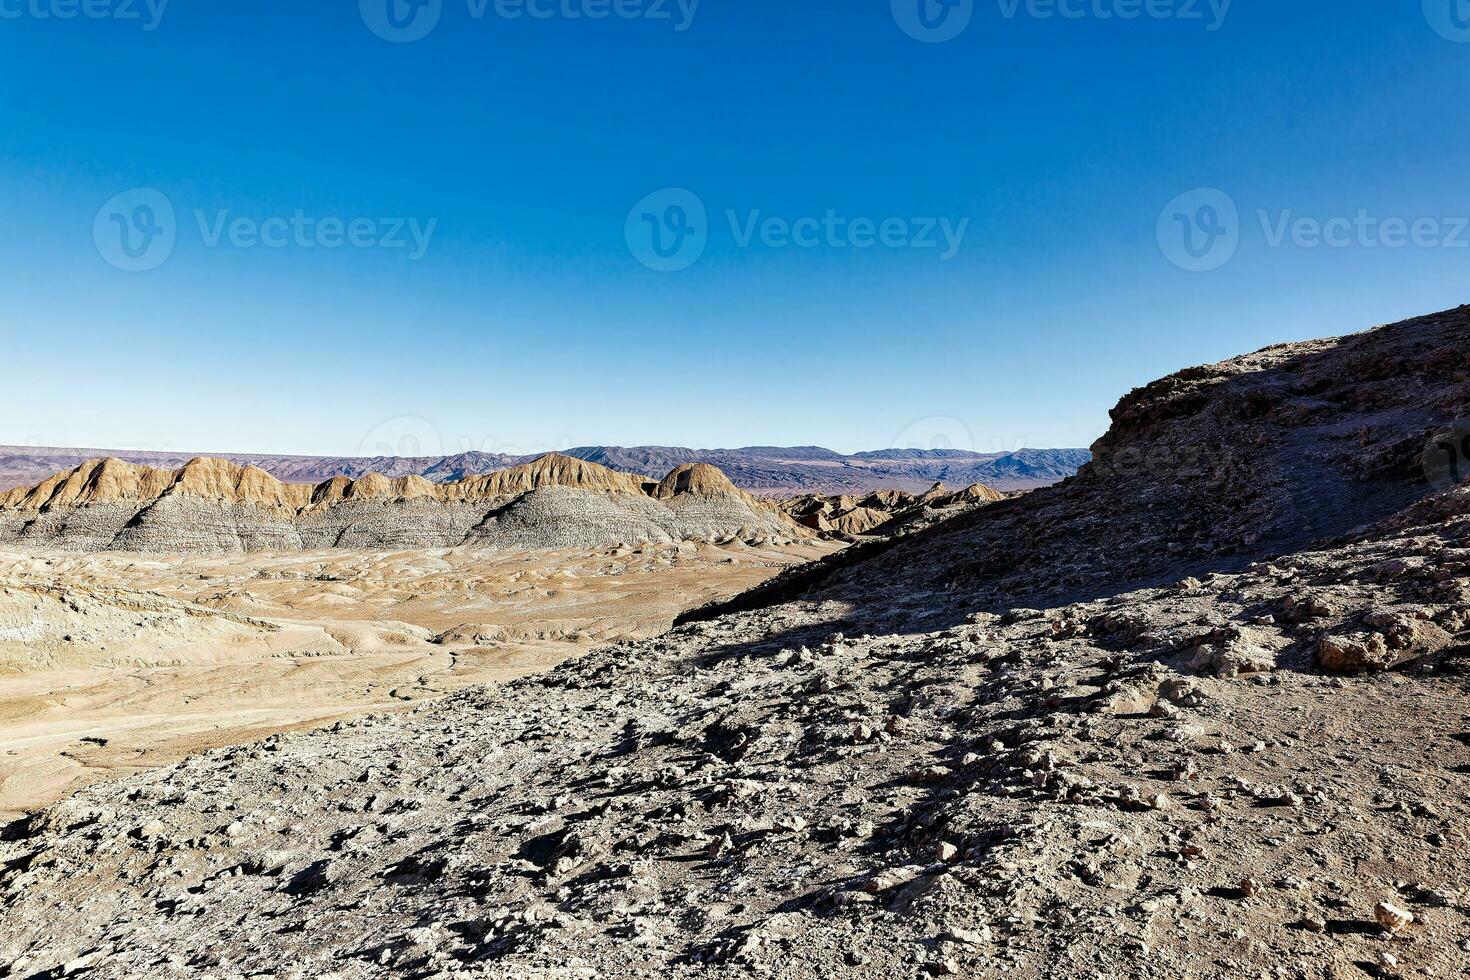 paysages de le atacama désert - san pedro de atacama - el loua - antofagasta Région - Chili. photo